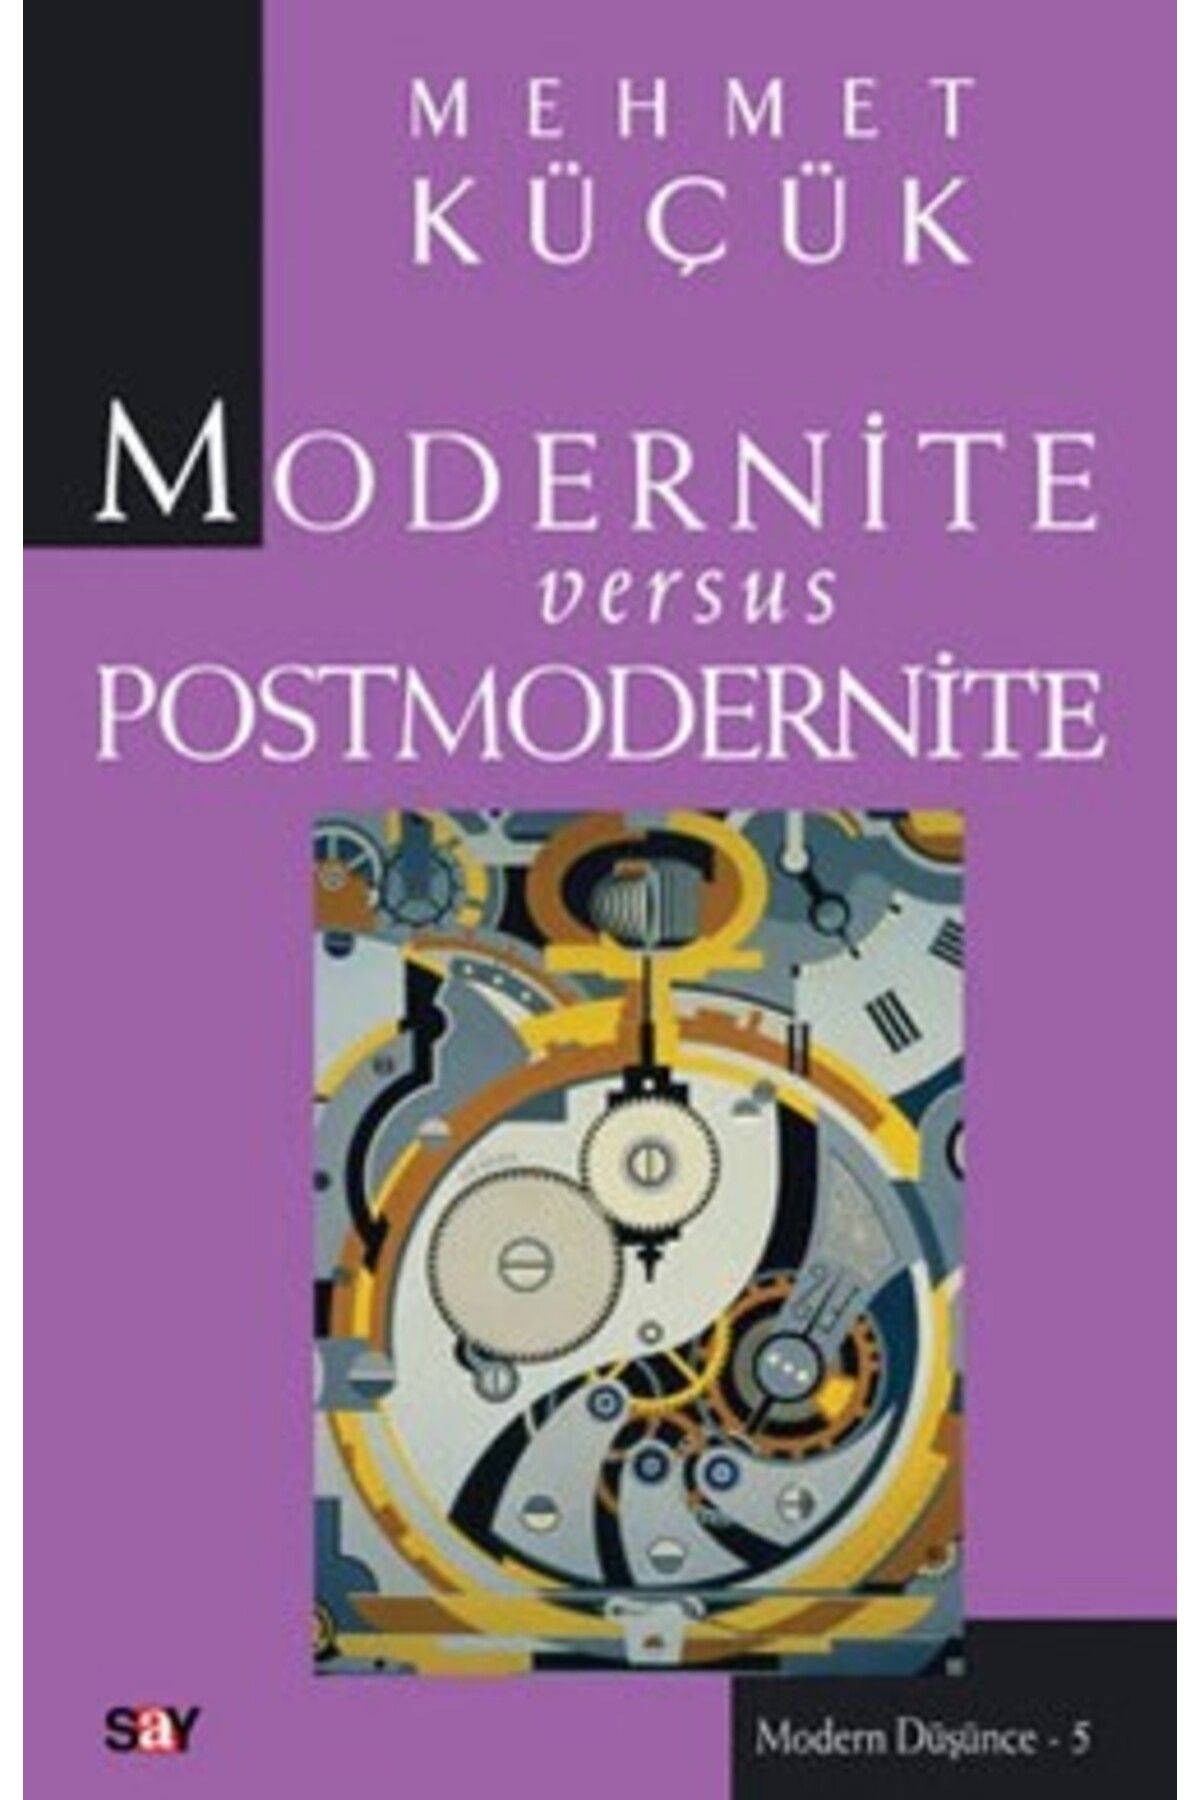 Say Yayınları Modernite Versus Postmodernite